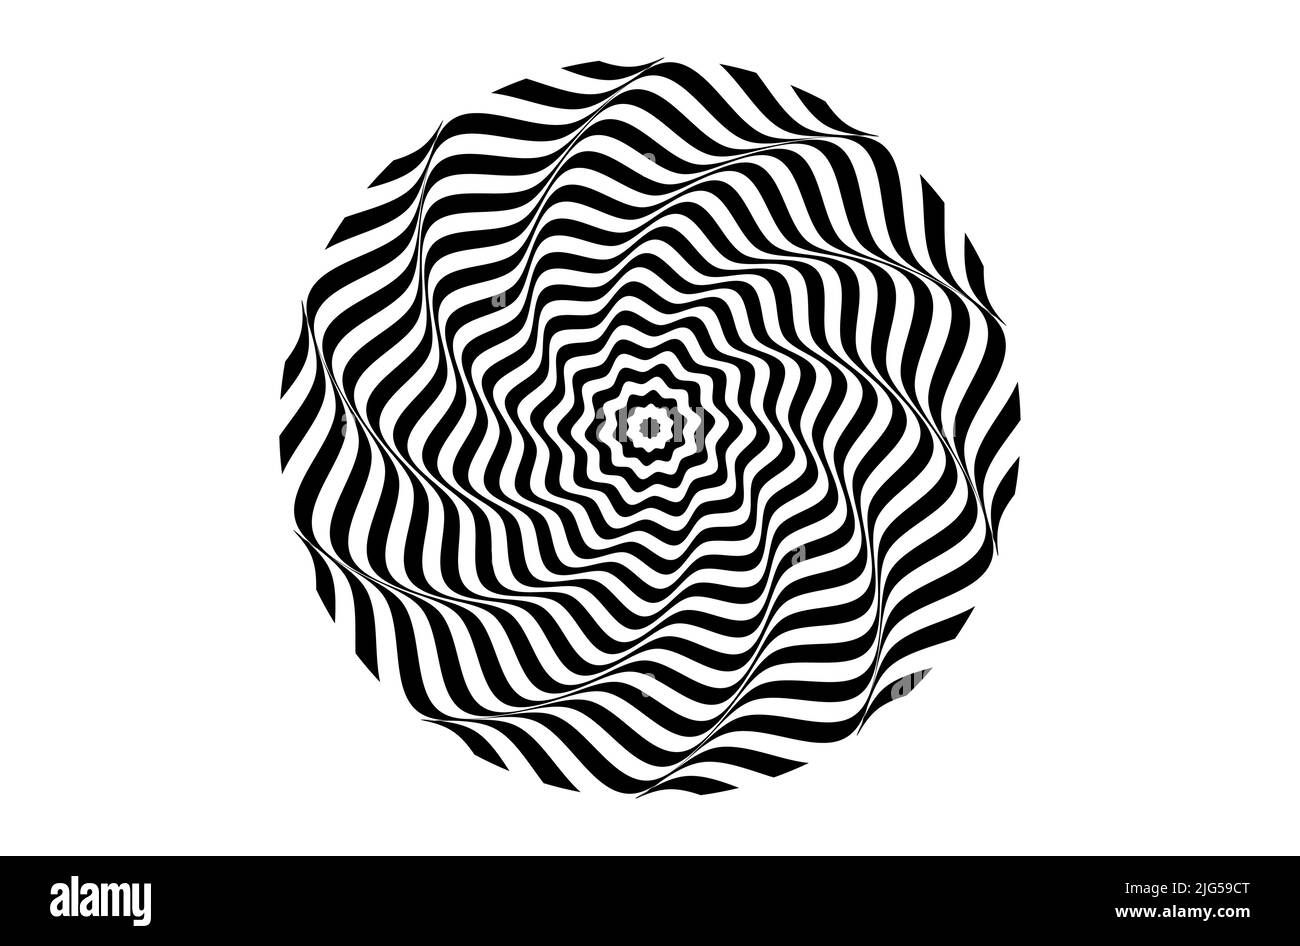 Schwarze Strudel-Linie auf weißem Hintergrund, Spirale Swirl Radiale Hypnotische Psychedelische Illusion rotierender Hintergrund Vektor schwarz-weiße Qualität Vektor illu Stock Vektor